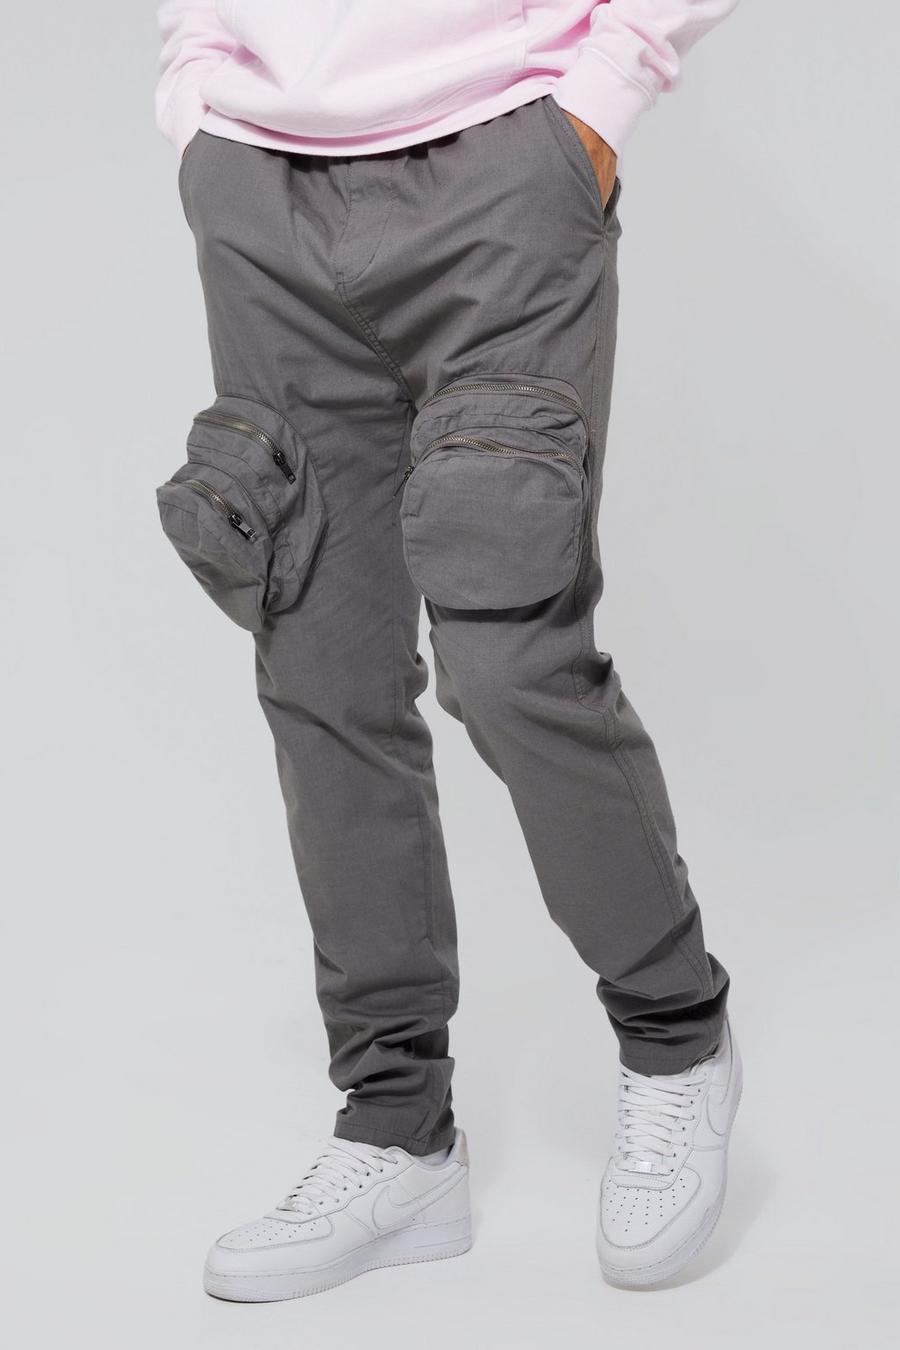 Pantalón Tall cargo ajustado elegante con cremallera 3D, Grey grigio